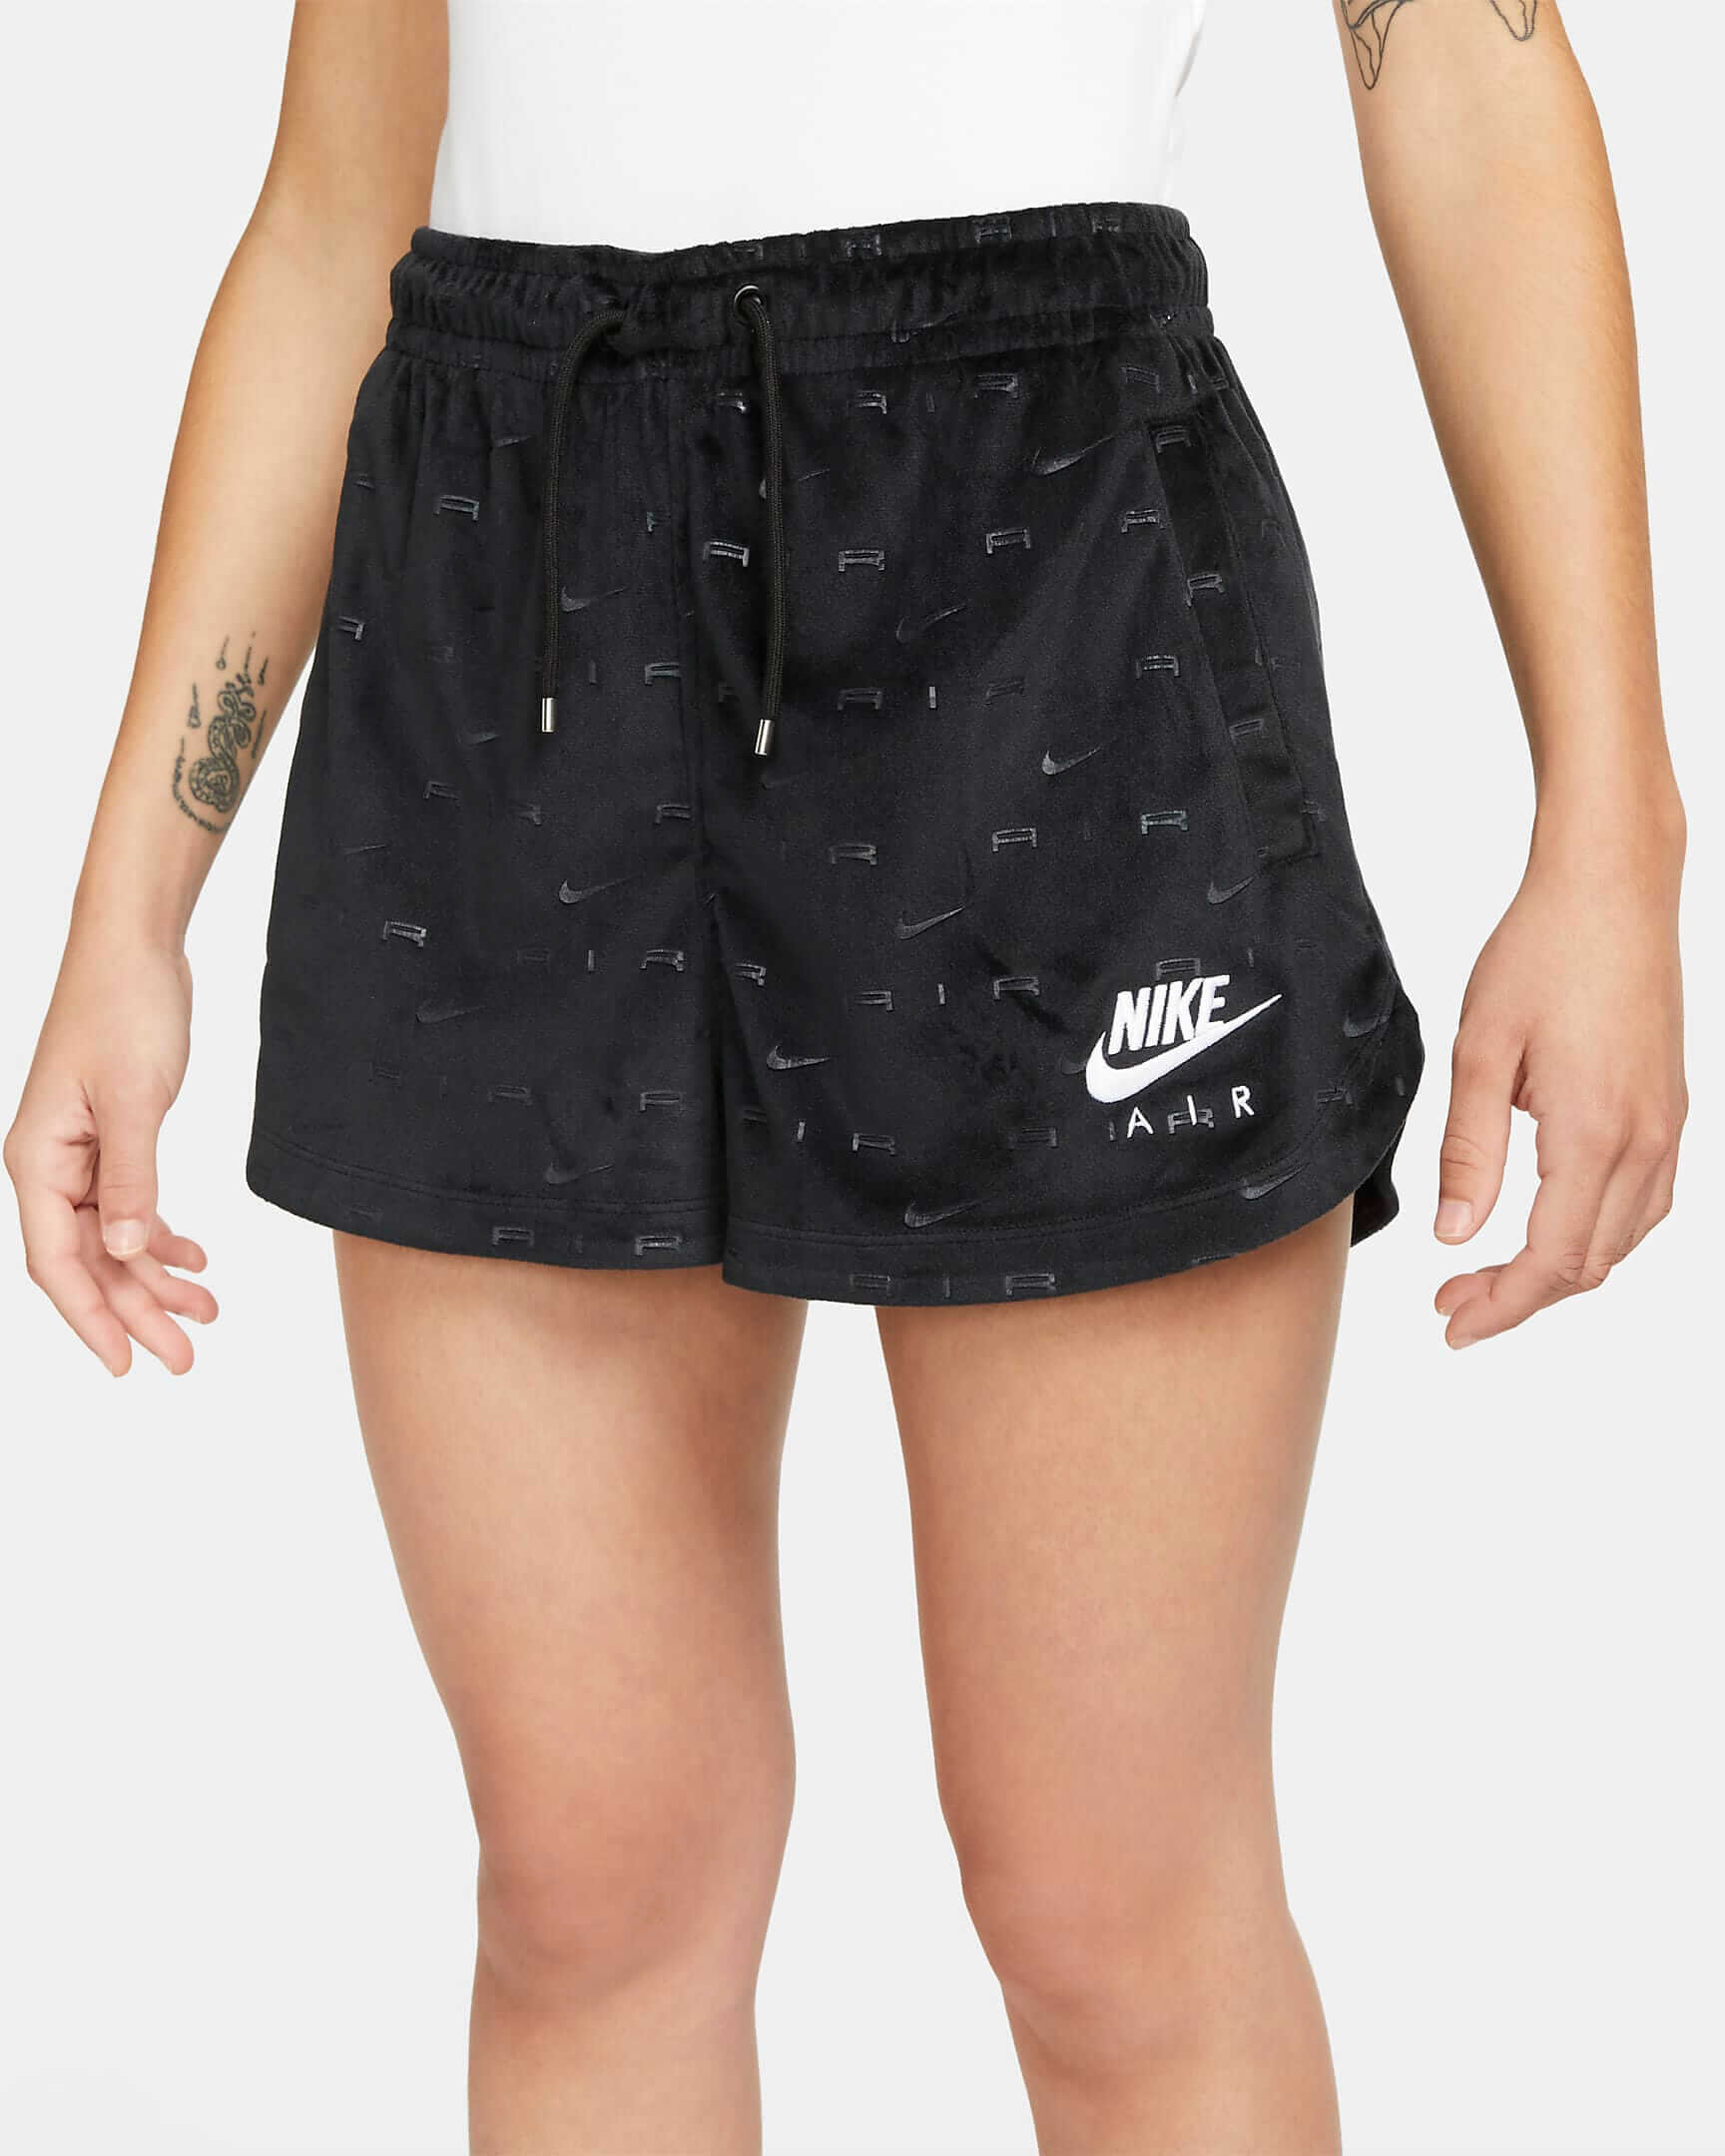 CNK-Nike-womens-velour-shorts-black.jpeg